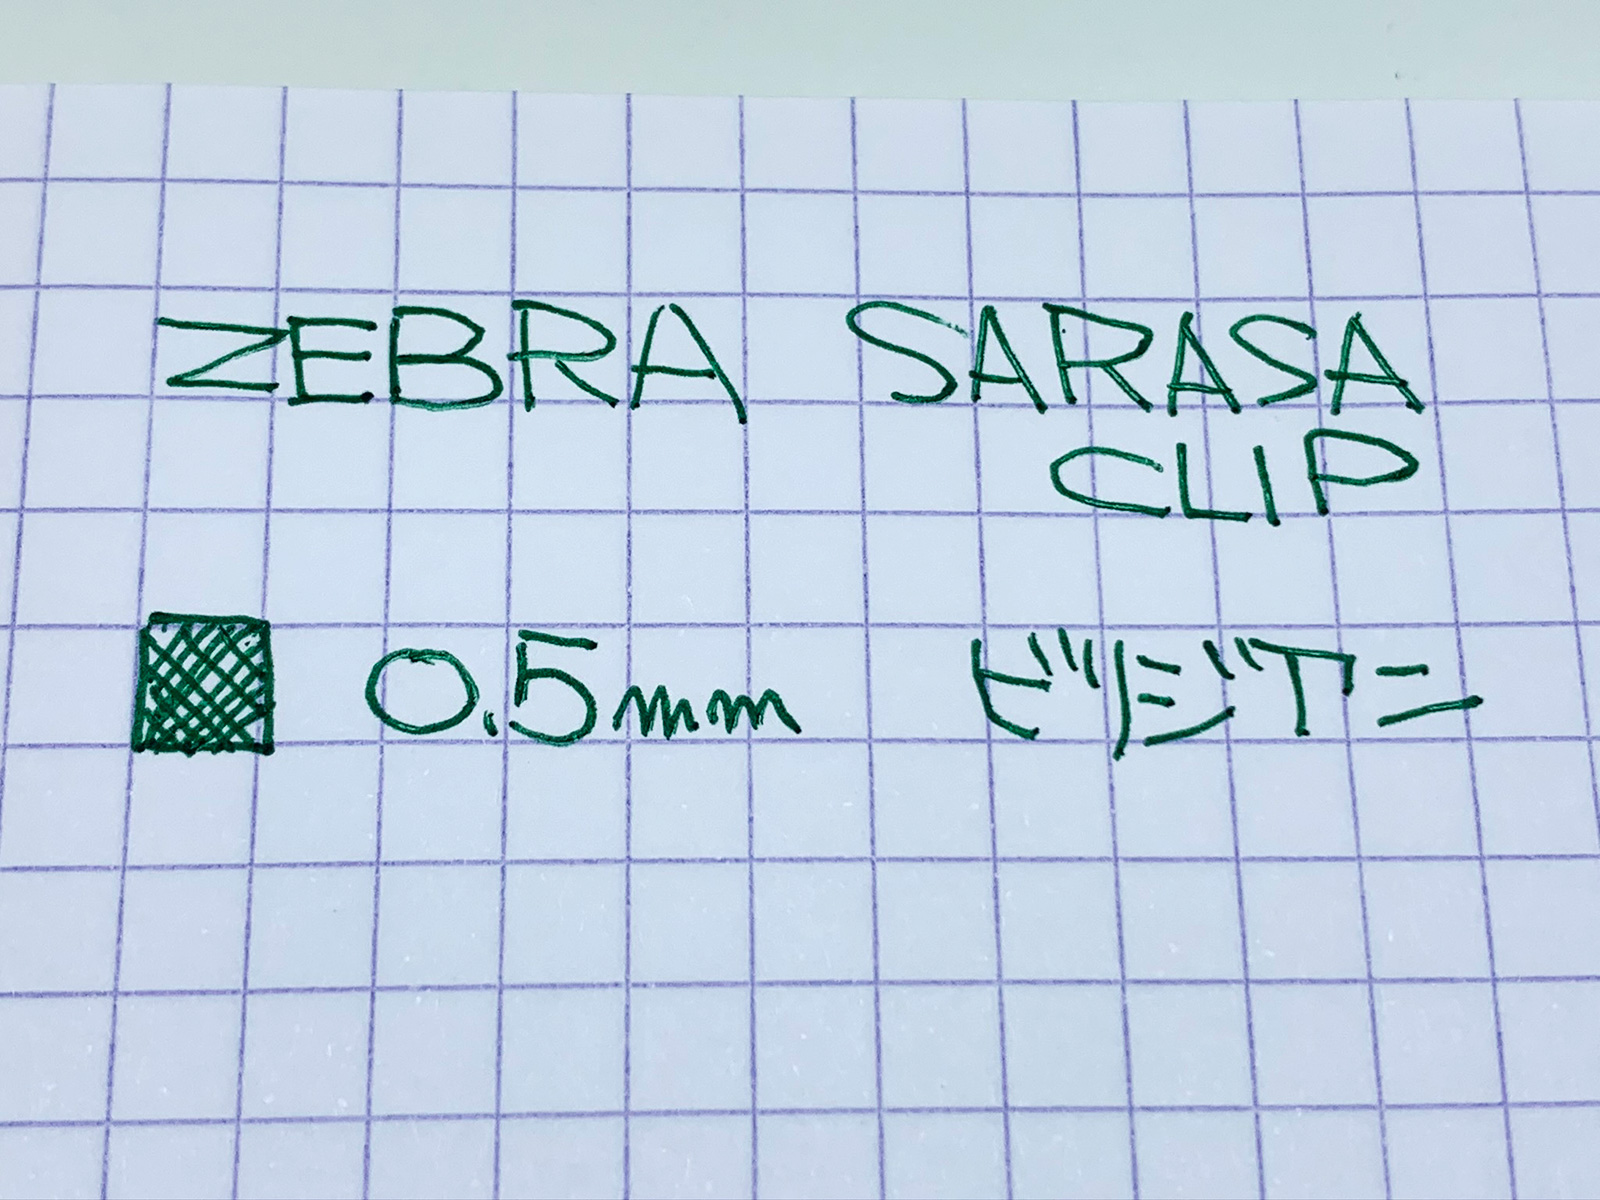 たまには緑インクも良いゼブラ「サラサ クリップ」0.5mmビリジアン - sutero choice